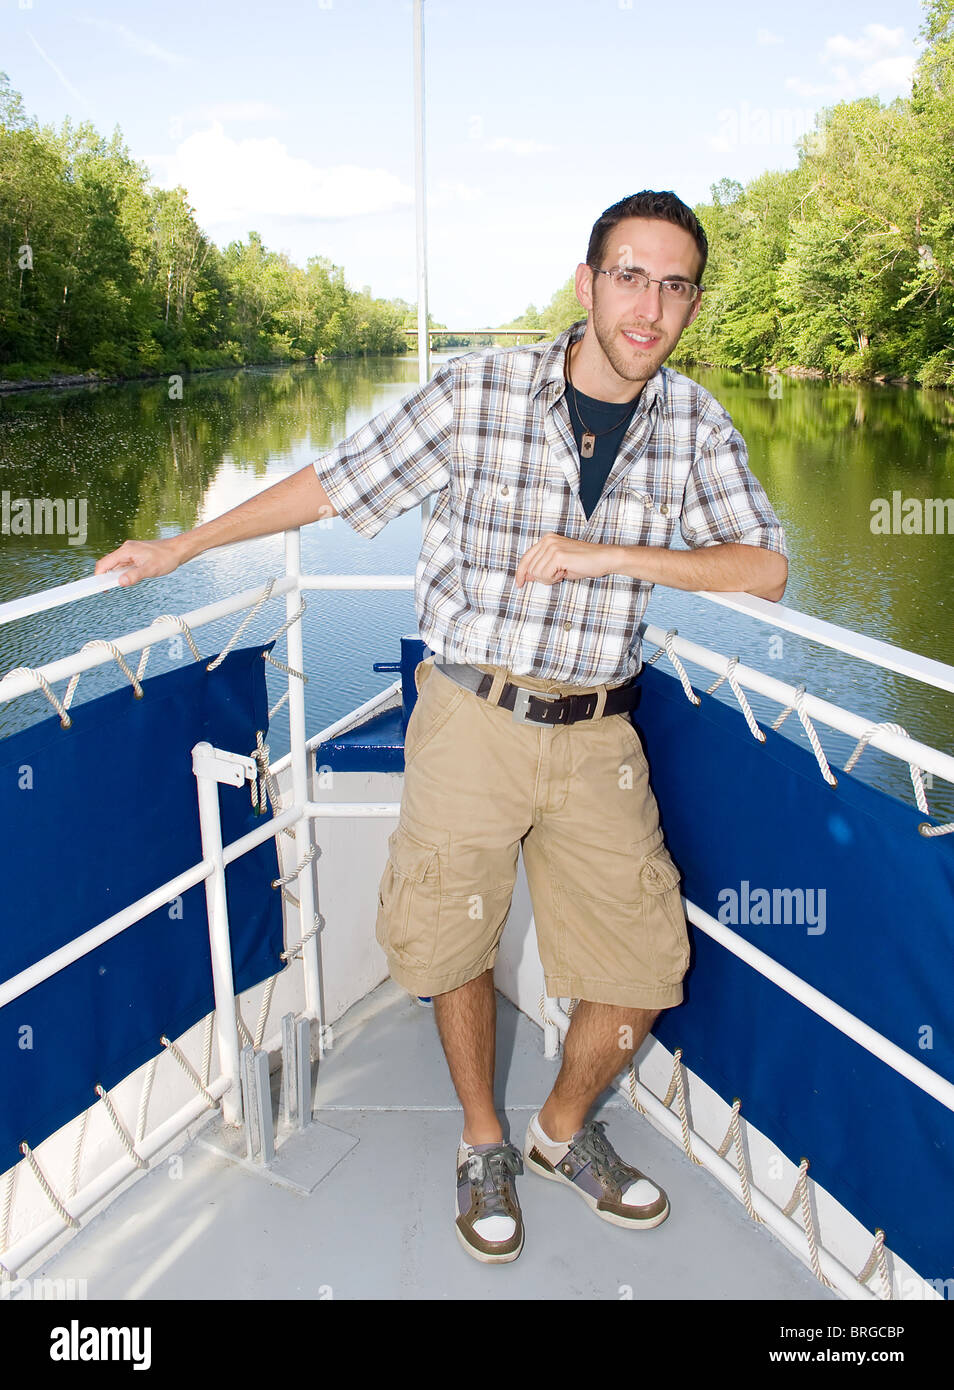 Un giovane maschio adulto con gli occhiali sulla parte anteriore di una imbarcazione dando un tour nel corso di un viaggio sul fiume Foto Stock